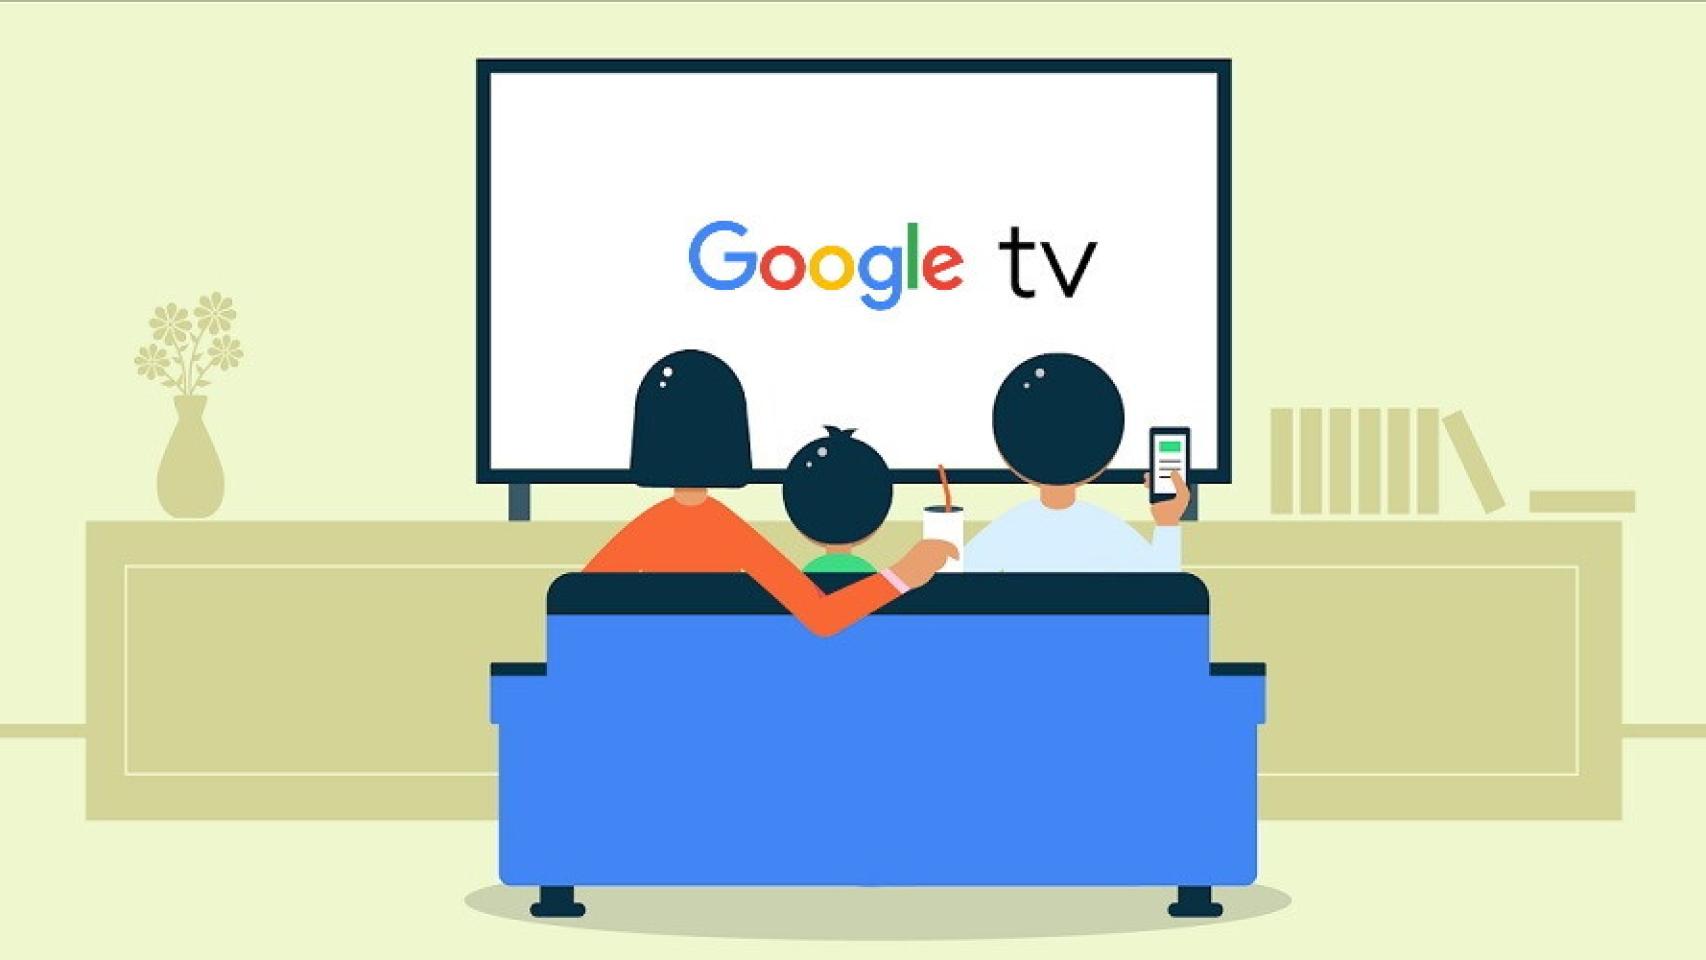 Así es la interfaz de Google TV en vídeo, ¡y menuda pinta tiene!